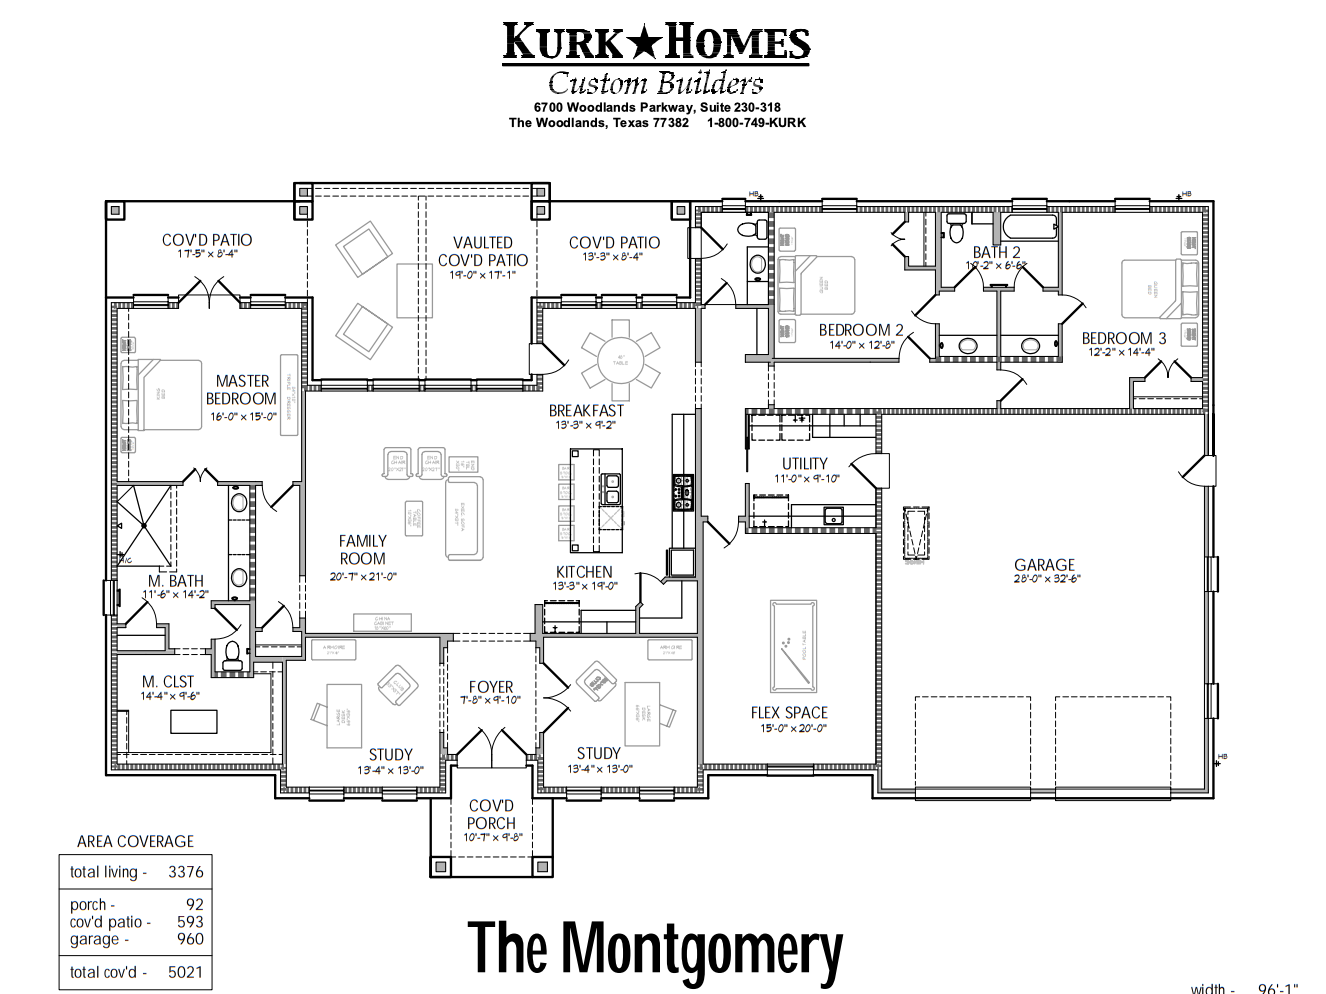 The Montgomery Floorplan